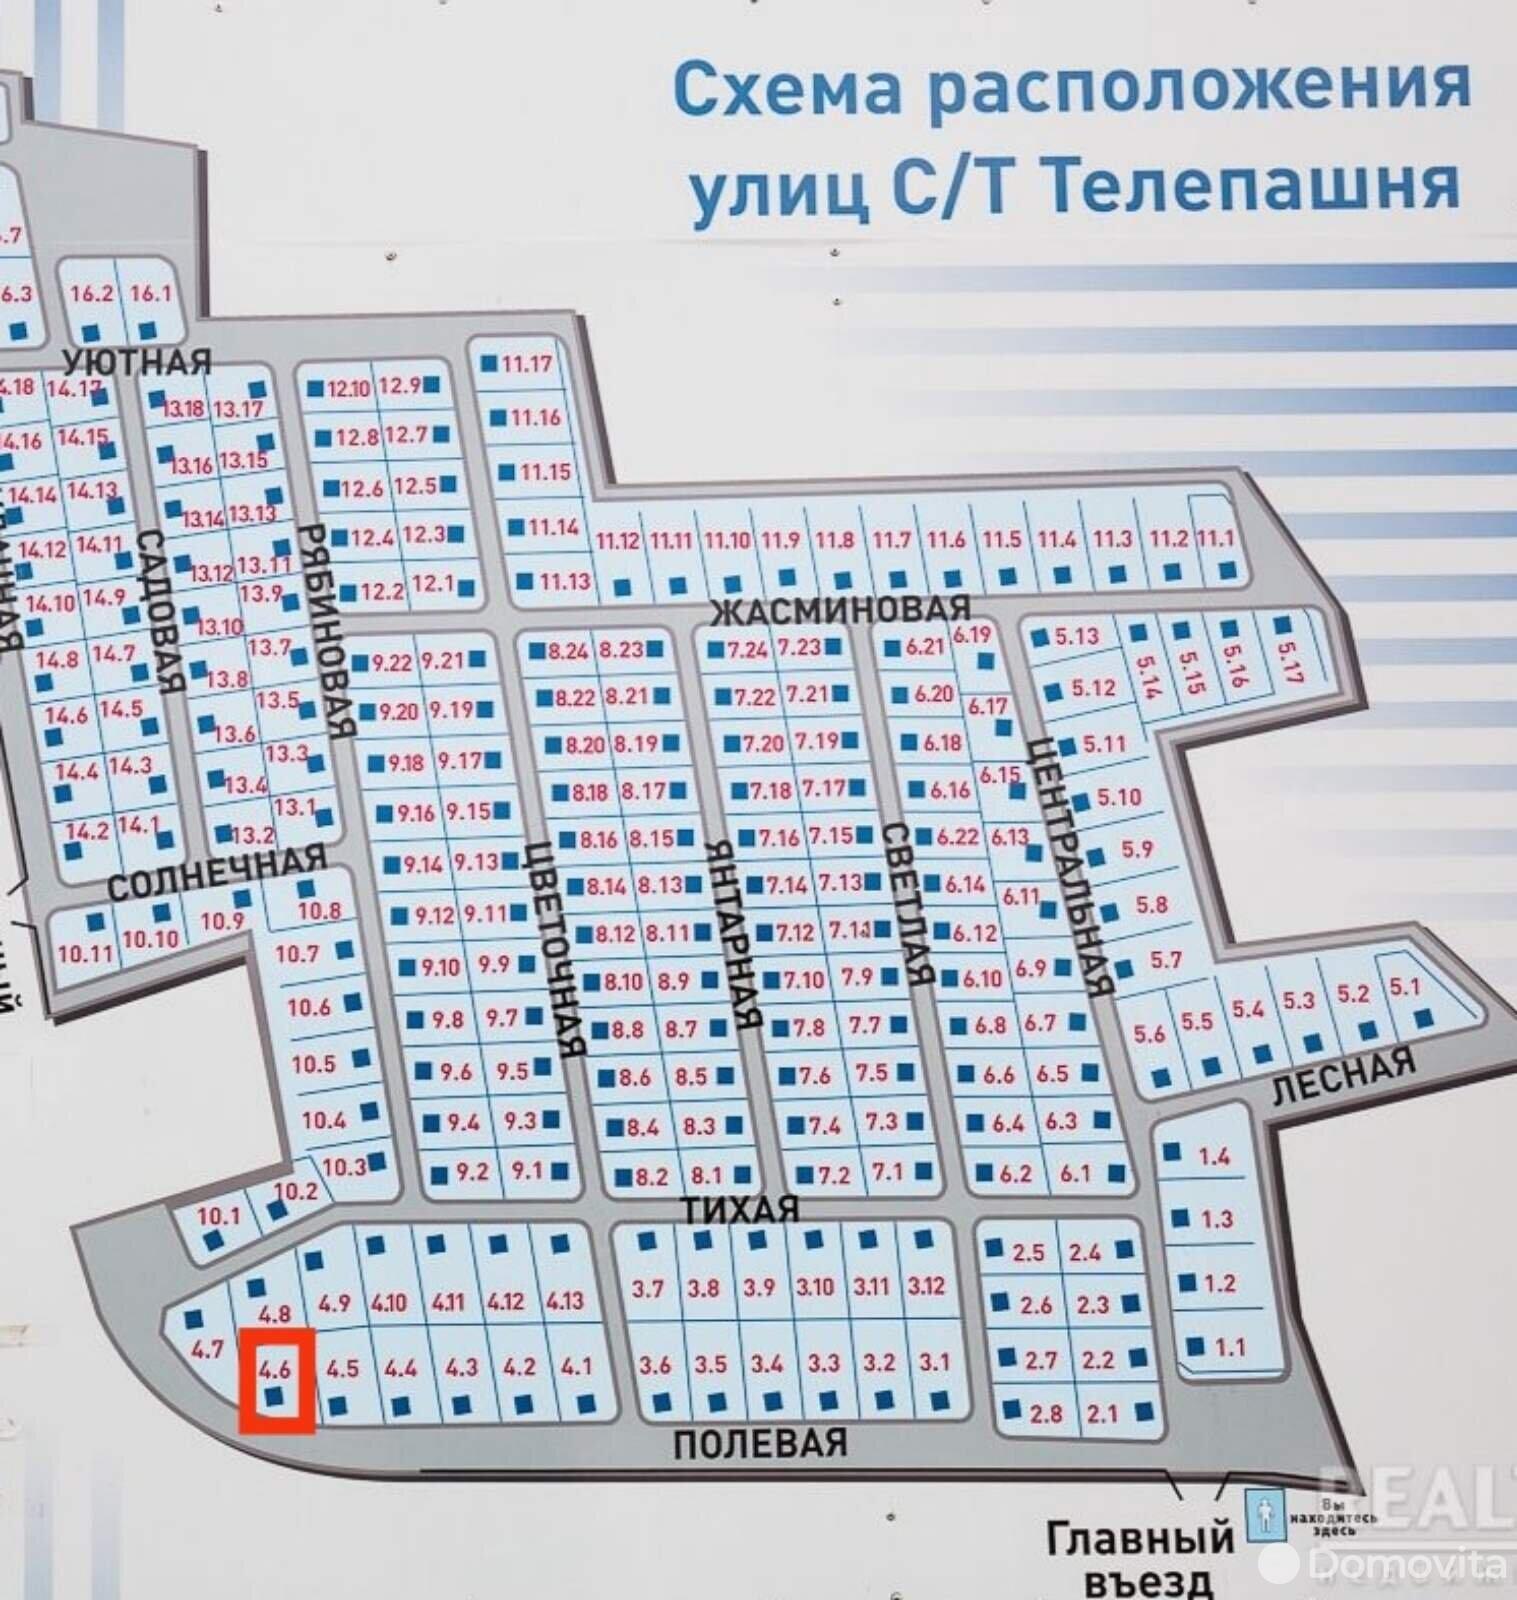 Купить земельный участок, 15 соток, Телепашня, Минская область, 30000USD, код 566830 - фото 3